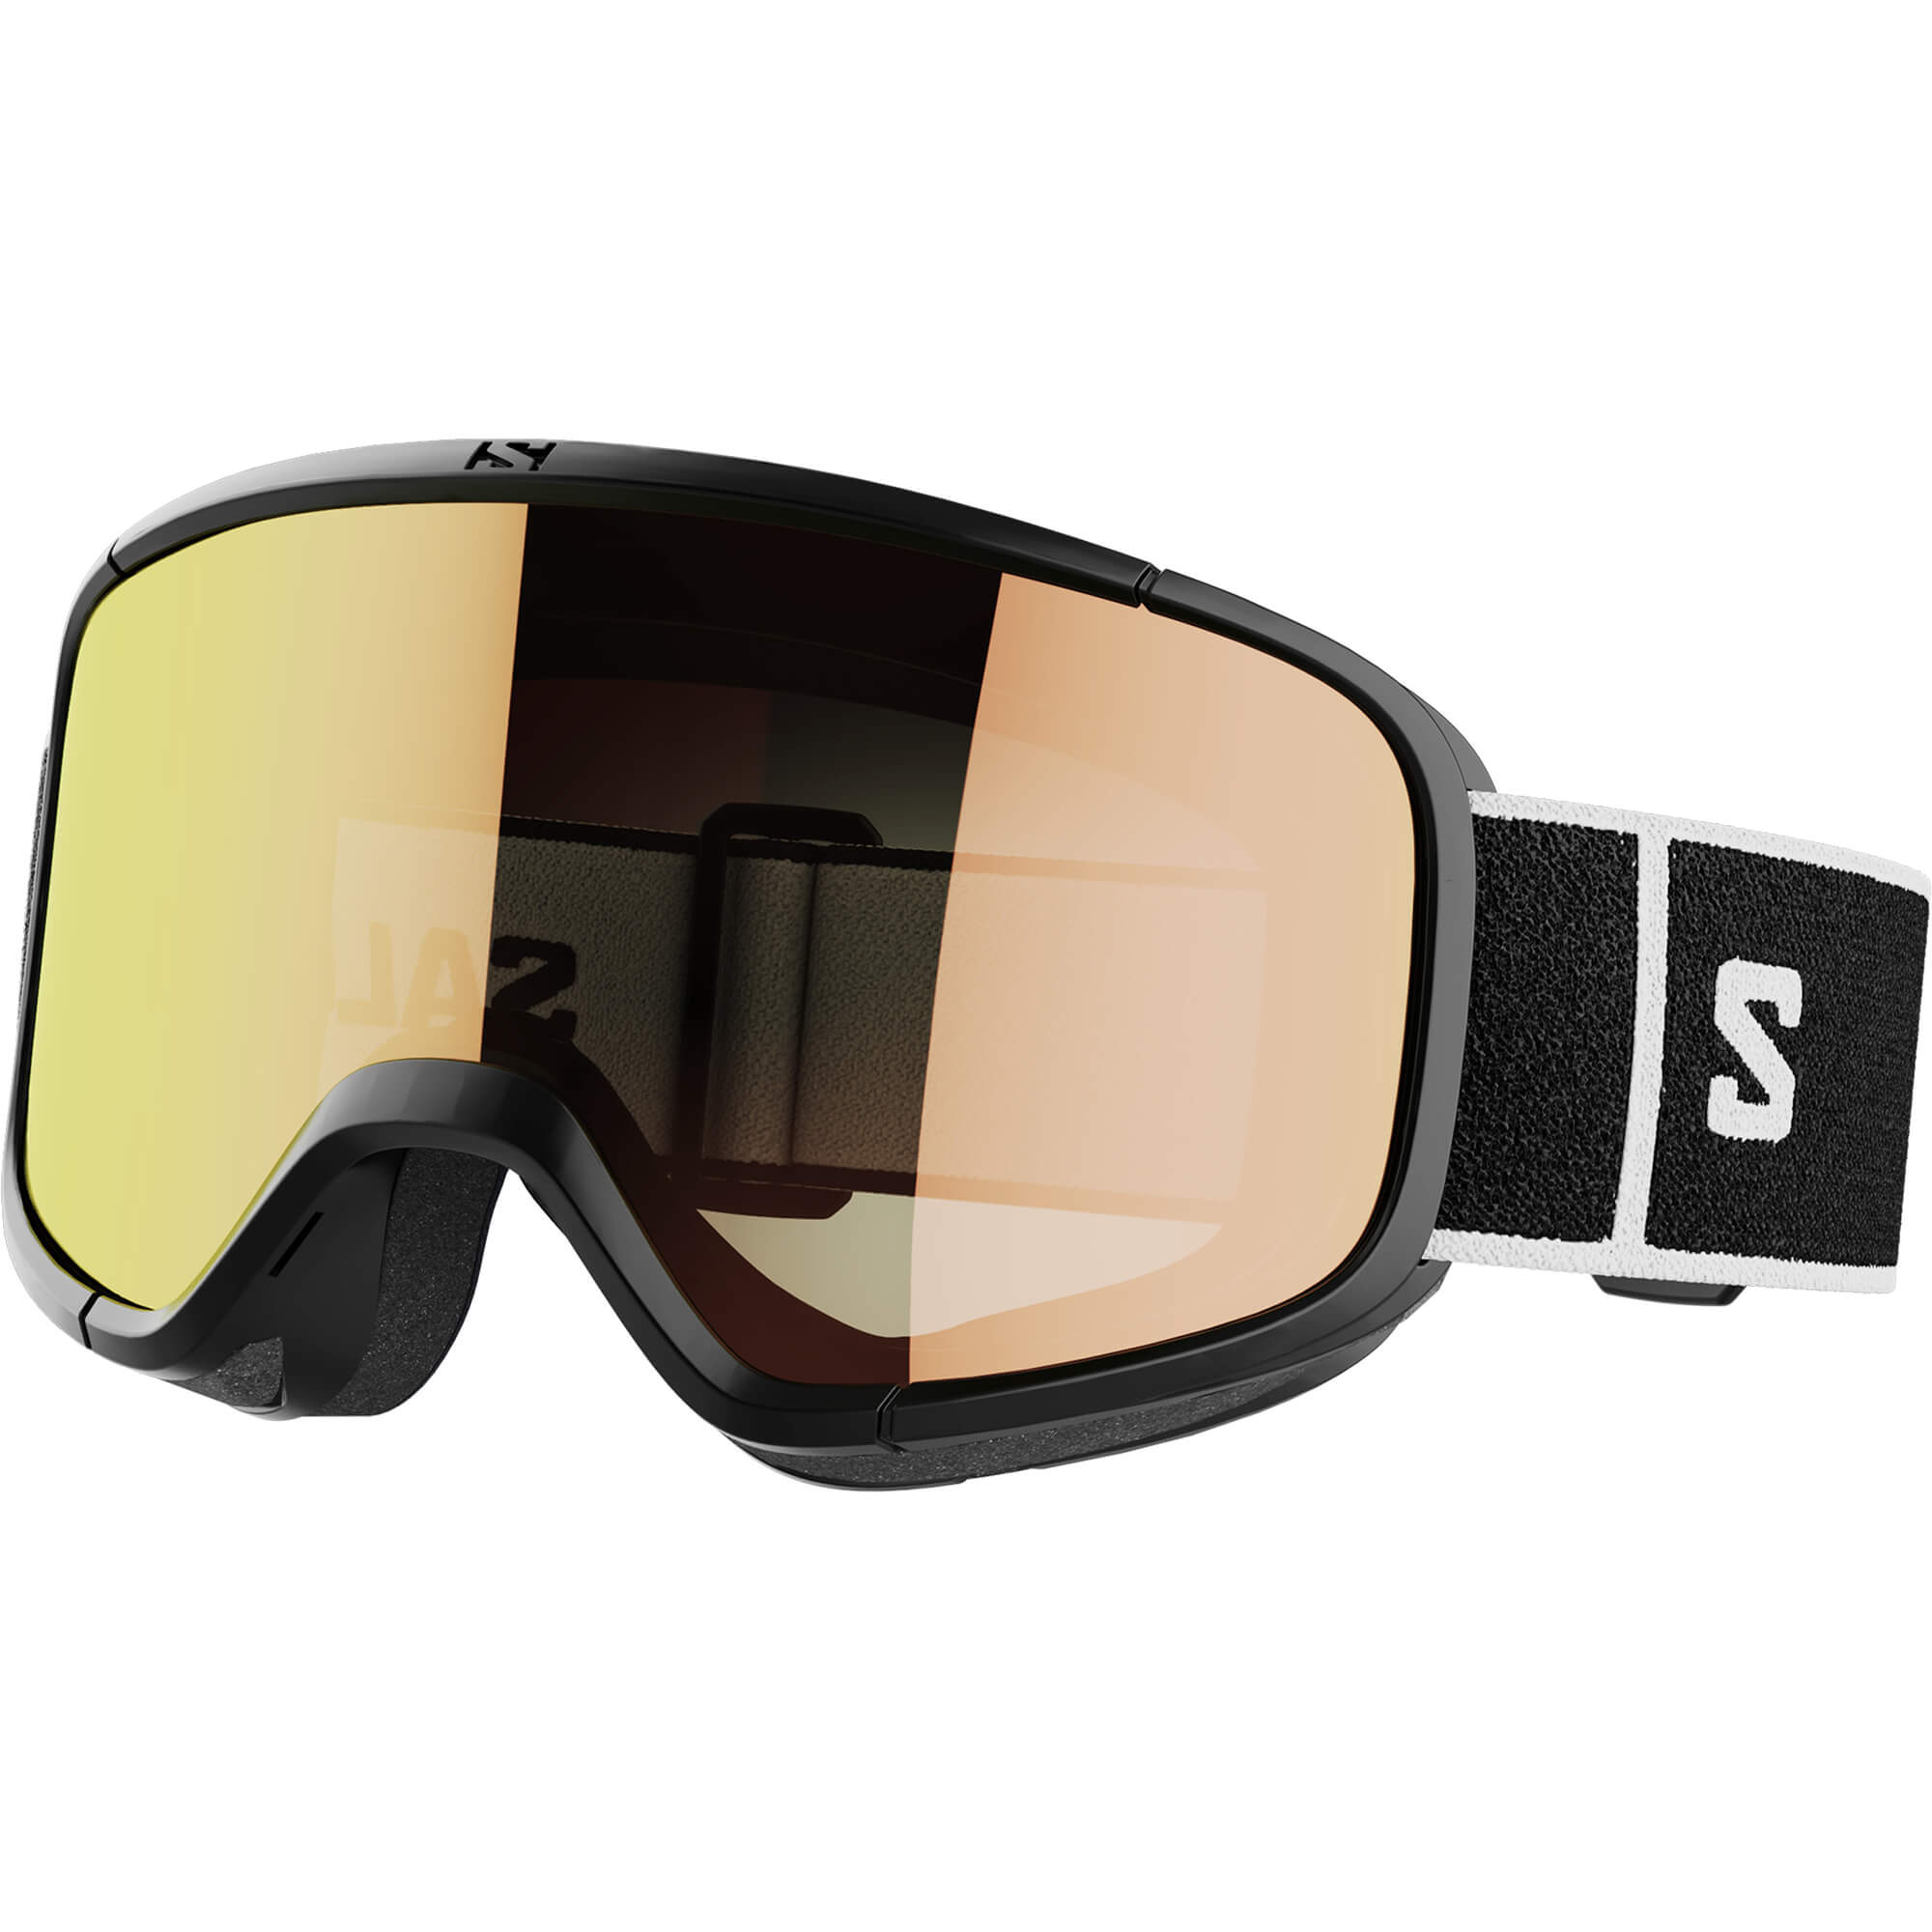 Genveje affald Stillehavsøer Salomon Aksium 2.0 Snowboard/Ski Goggles | Absolute-Snow